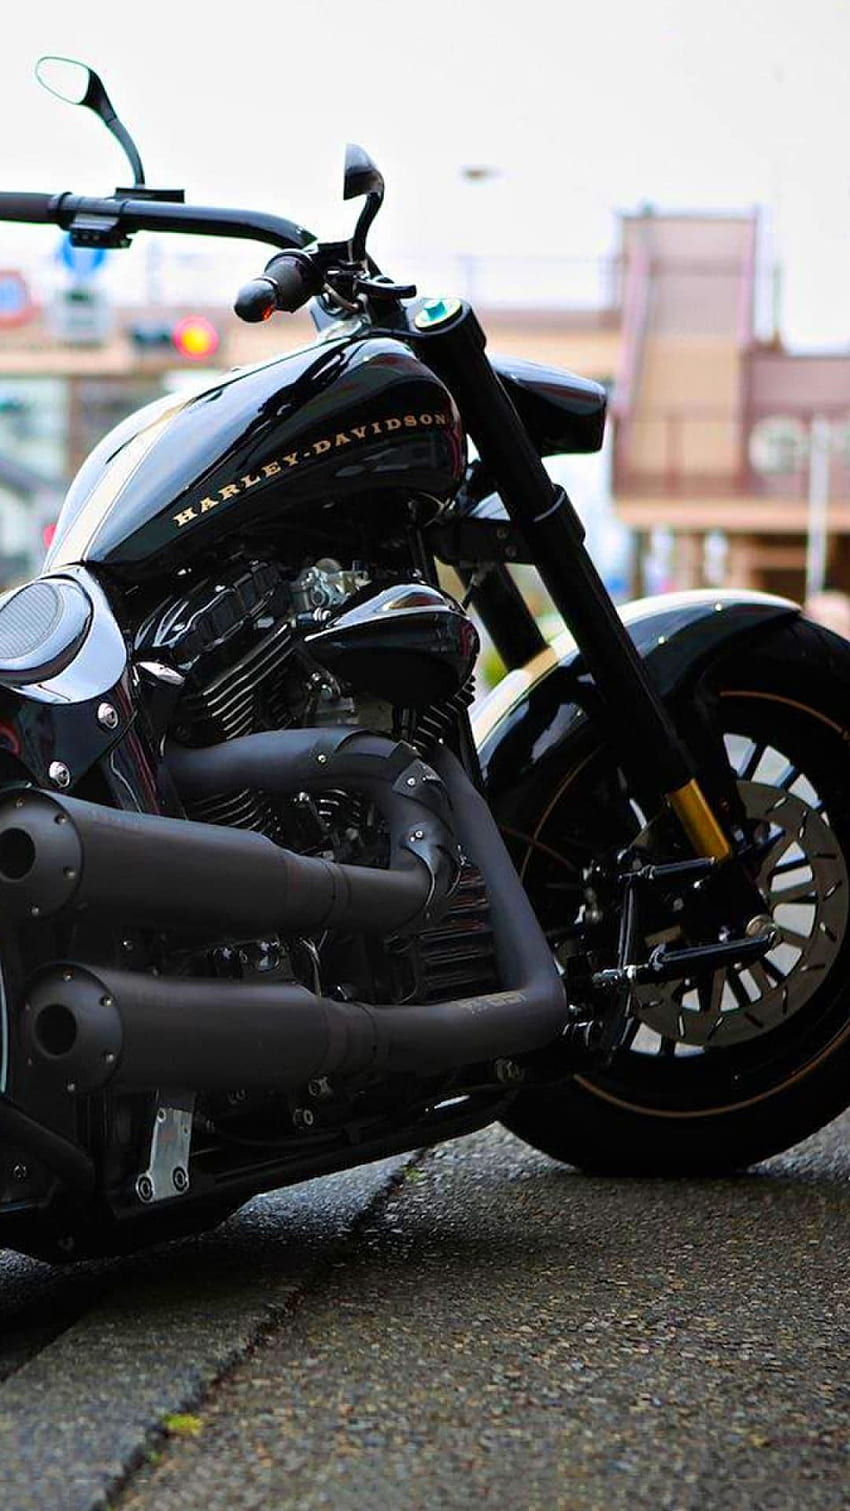 Vélo Harley Davidson pour Android Mobile, Moto Harley Davidson Fond d'écran de téléphone HD